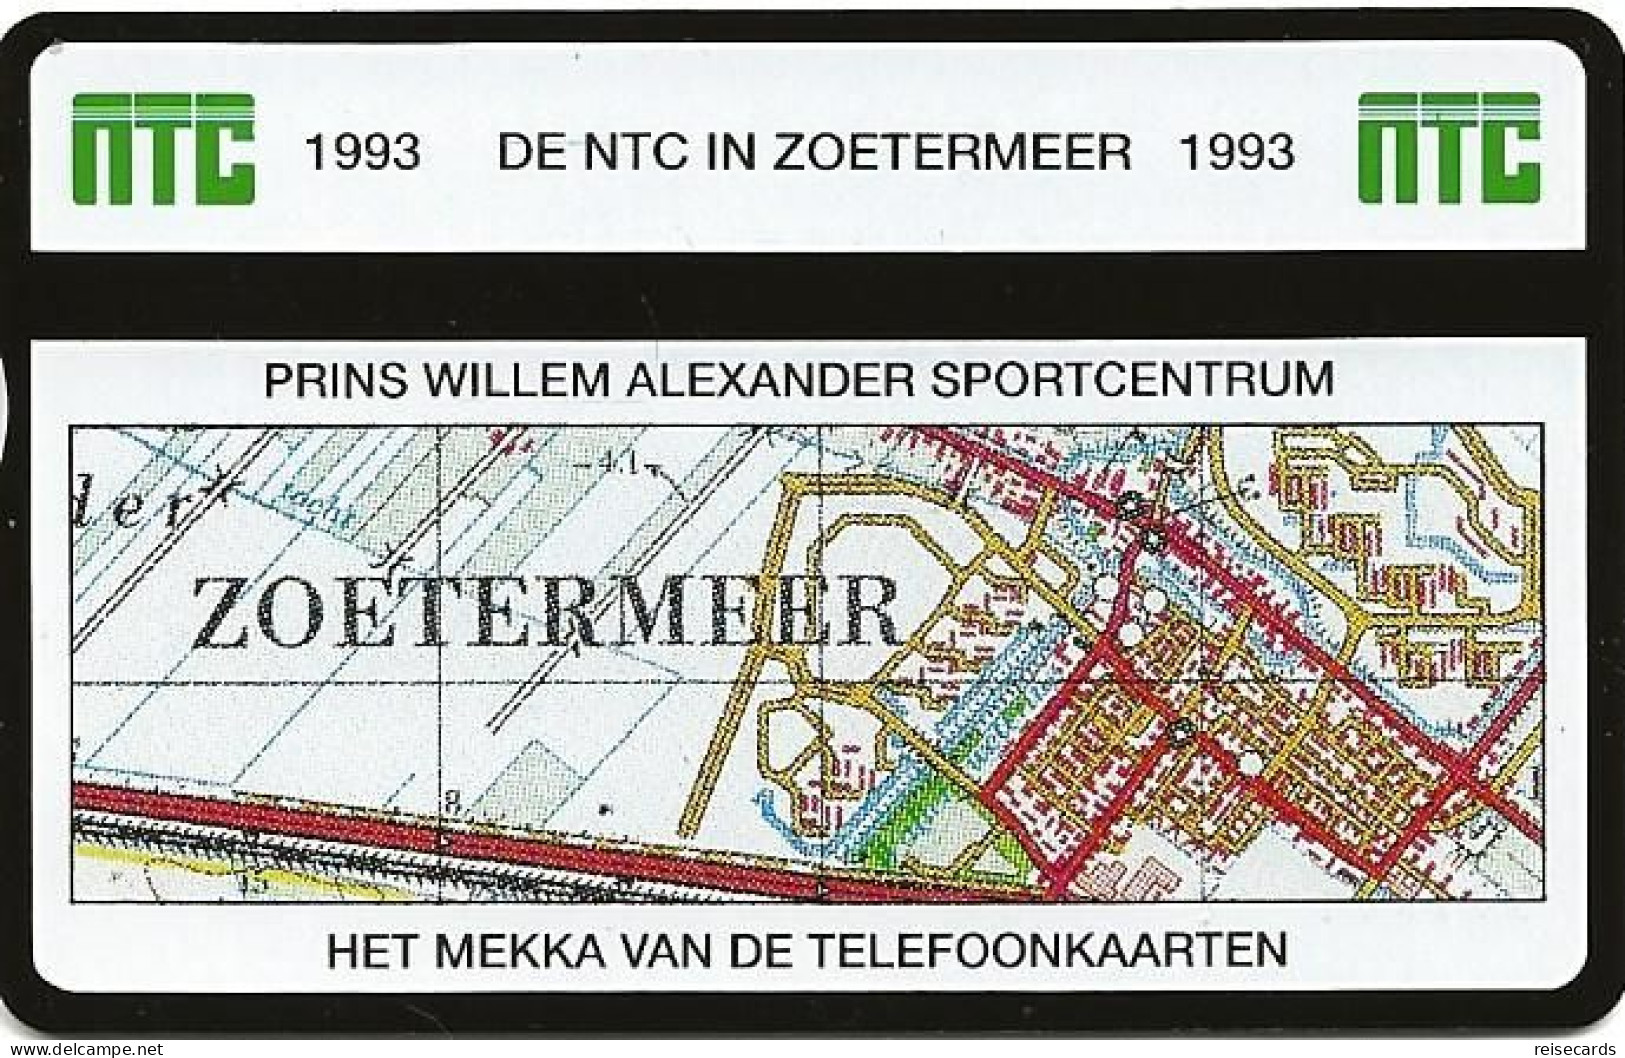 Netherlands: Ptt Telecom - 1993 301K NTC Telefoonkaarten Exhibition Zoetermeer 93. Mint - Privadas